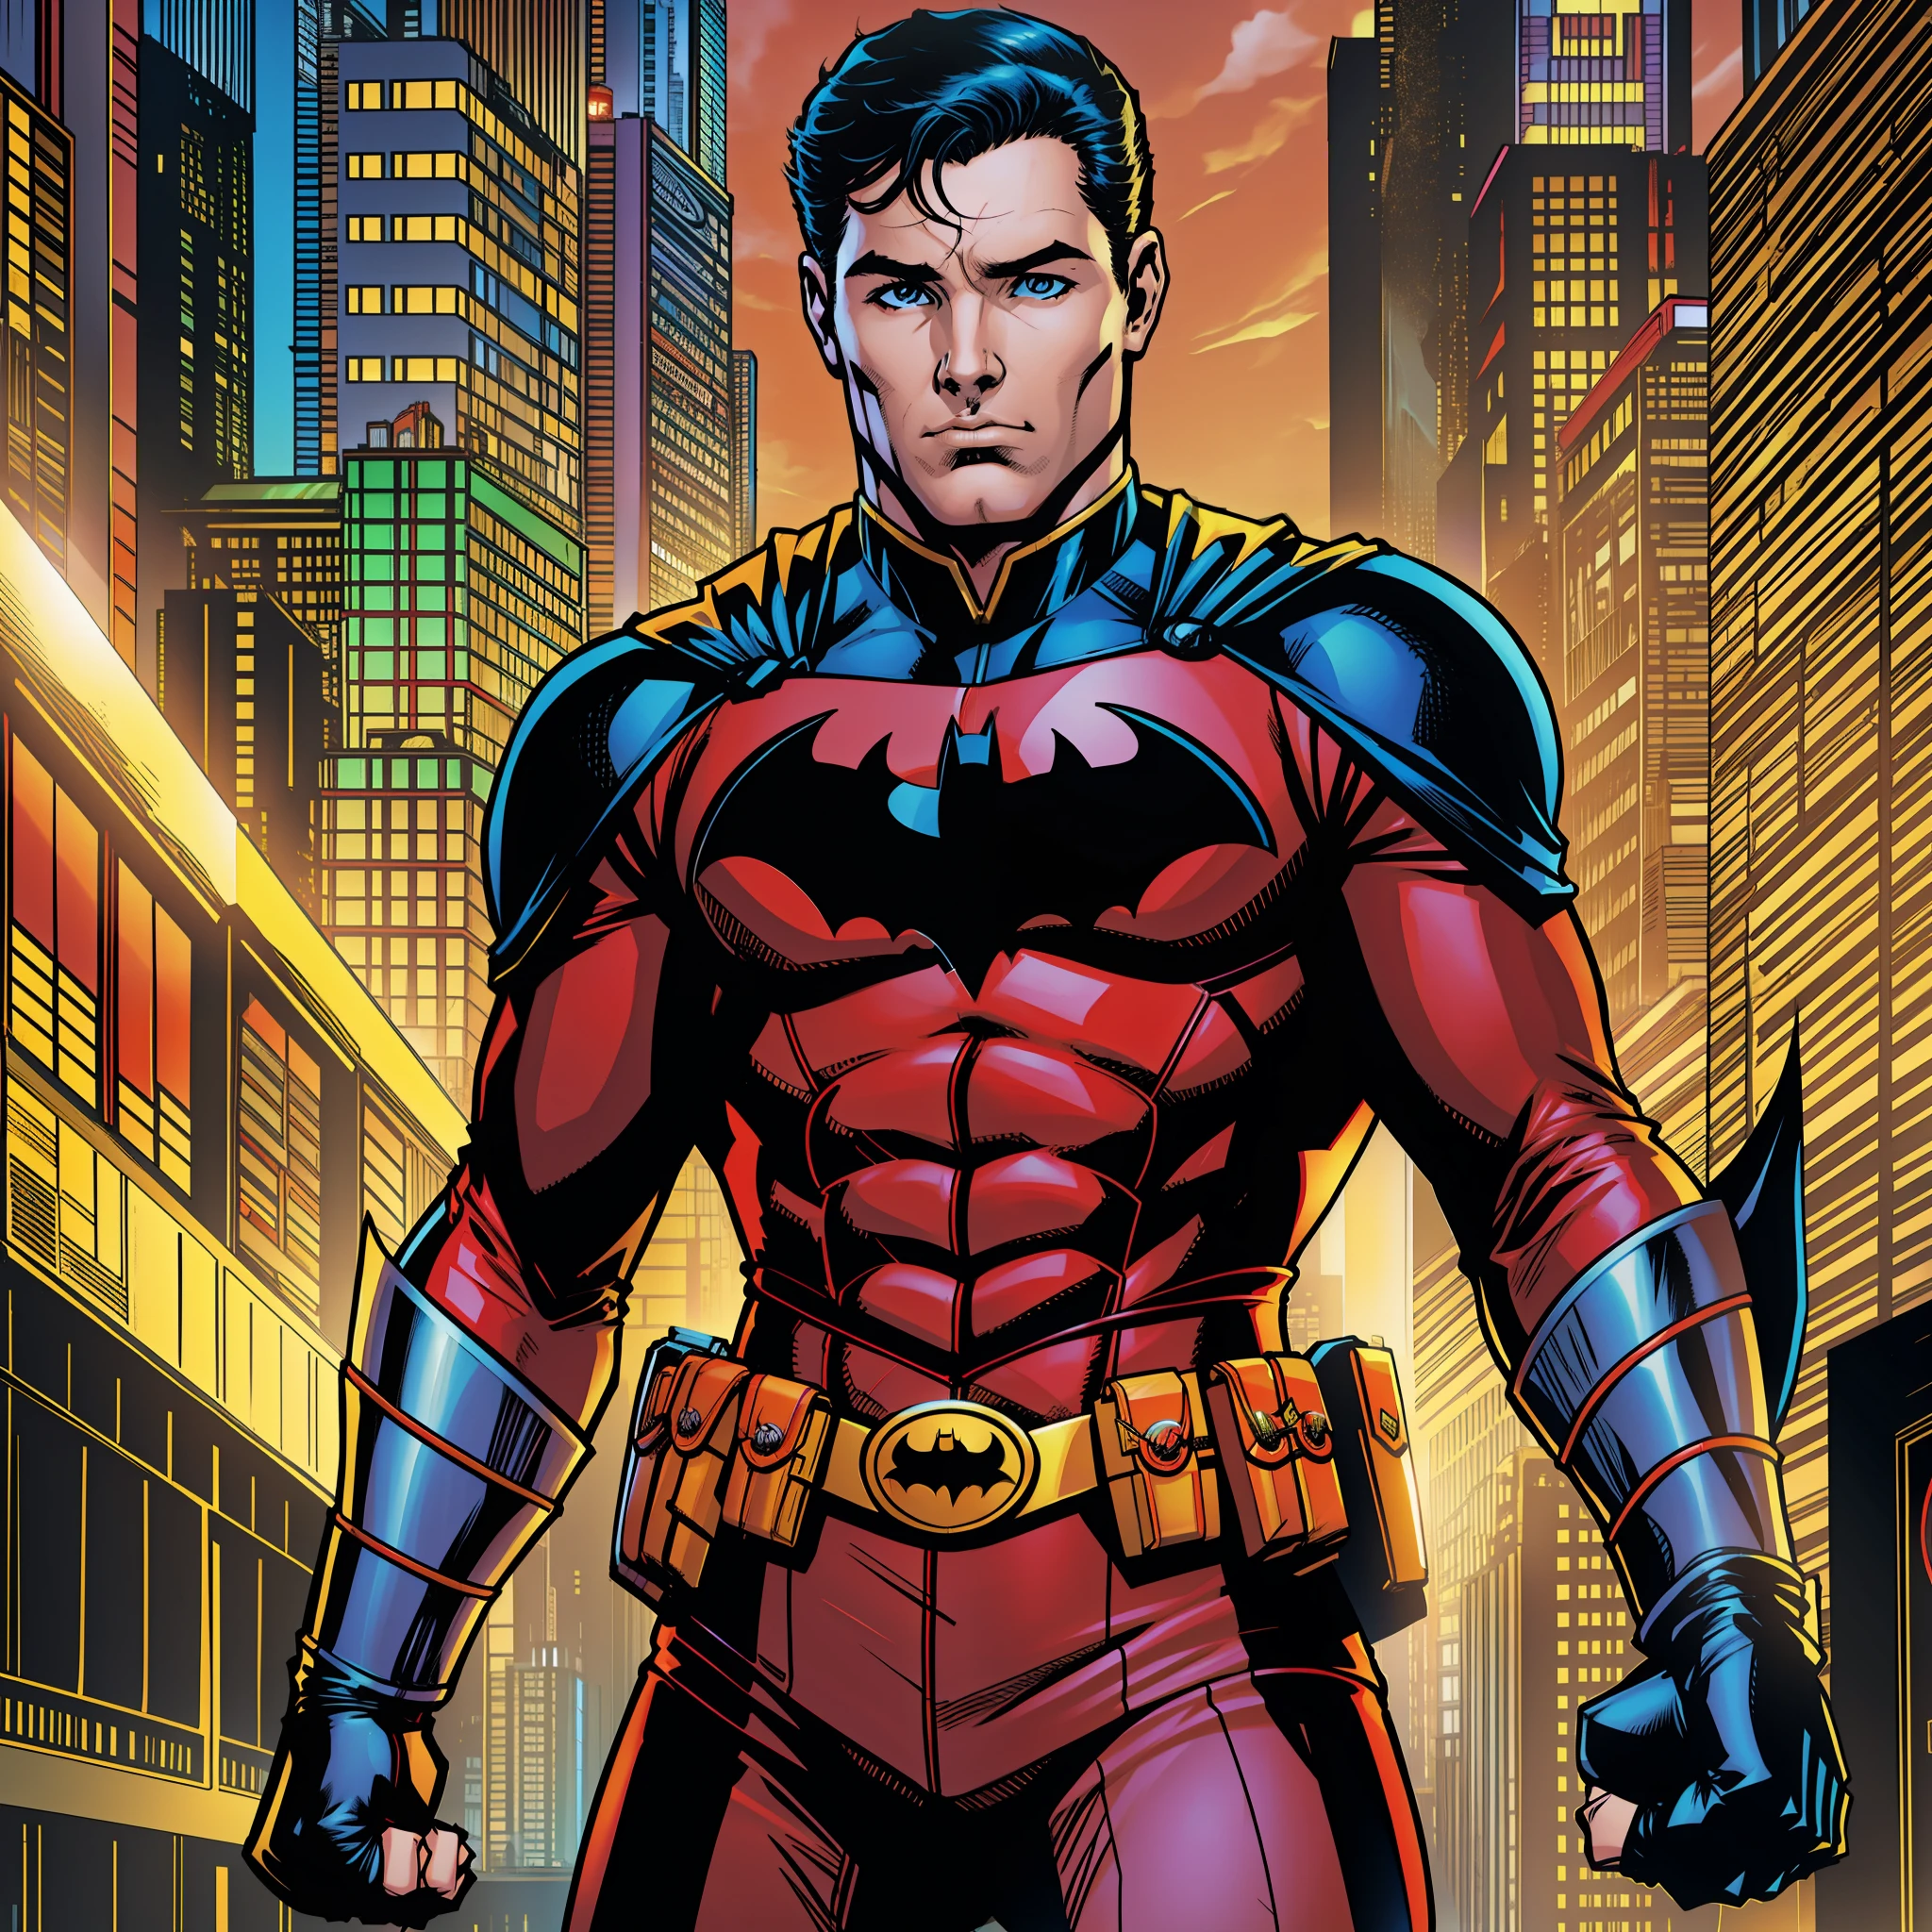 DC 코믹스 로빈 , 빨간색 바디수트 , 가슴에 로빈 로고 , 솔로 DC 코믹스 아트 스타일 , 배트맨 만화책에서